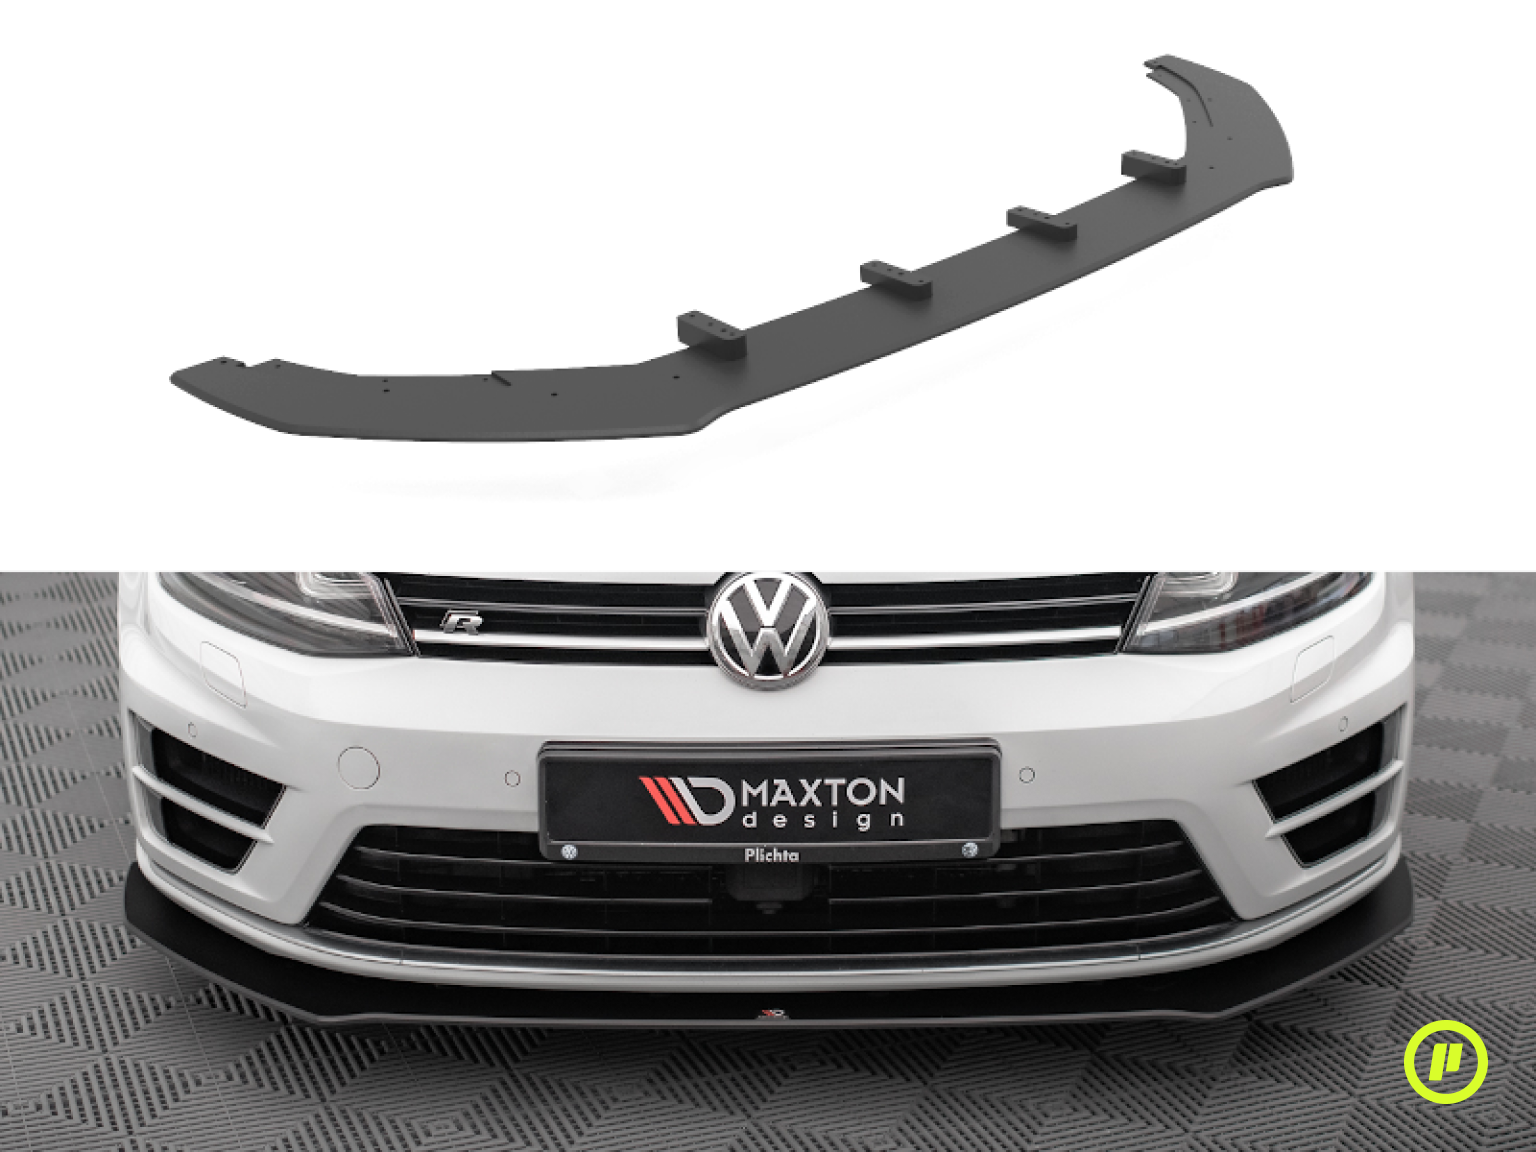 Maxton Design - Street Pro Front Splitter v1 for Volkswagen Golf 7 R (Mk7 2013-2016)